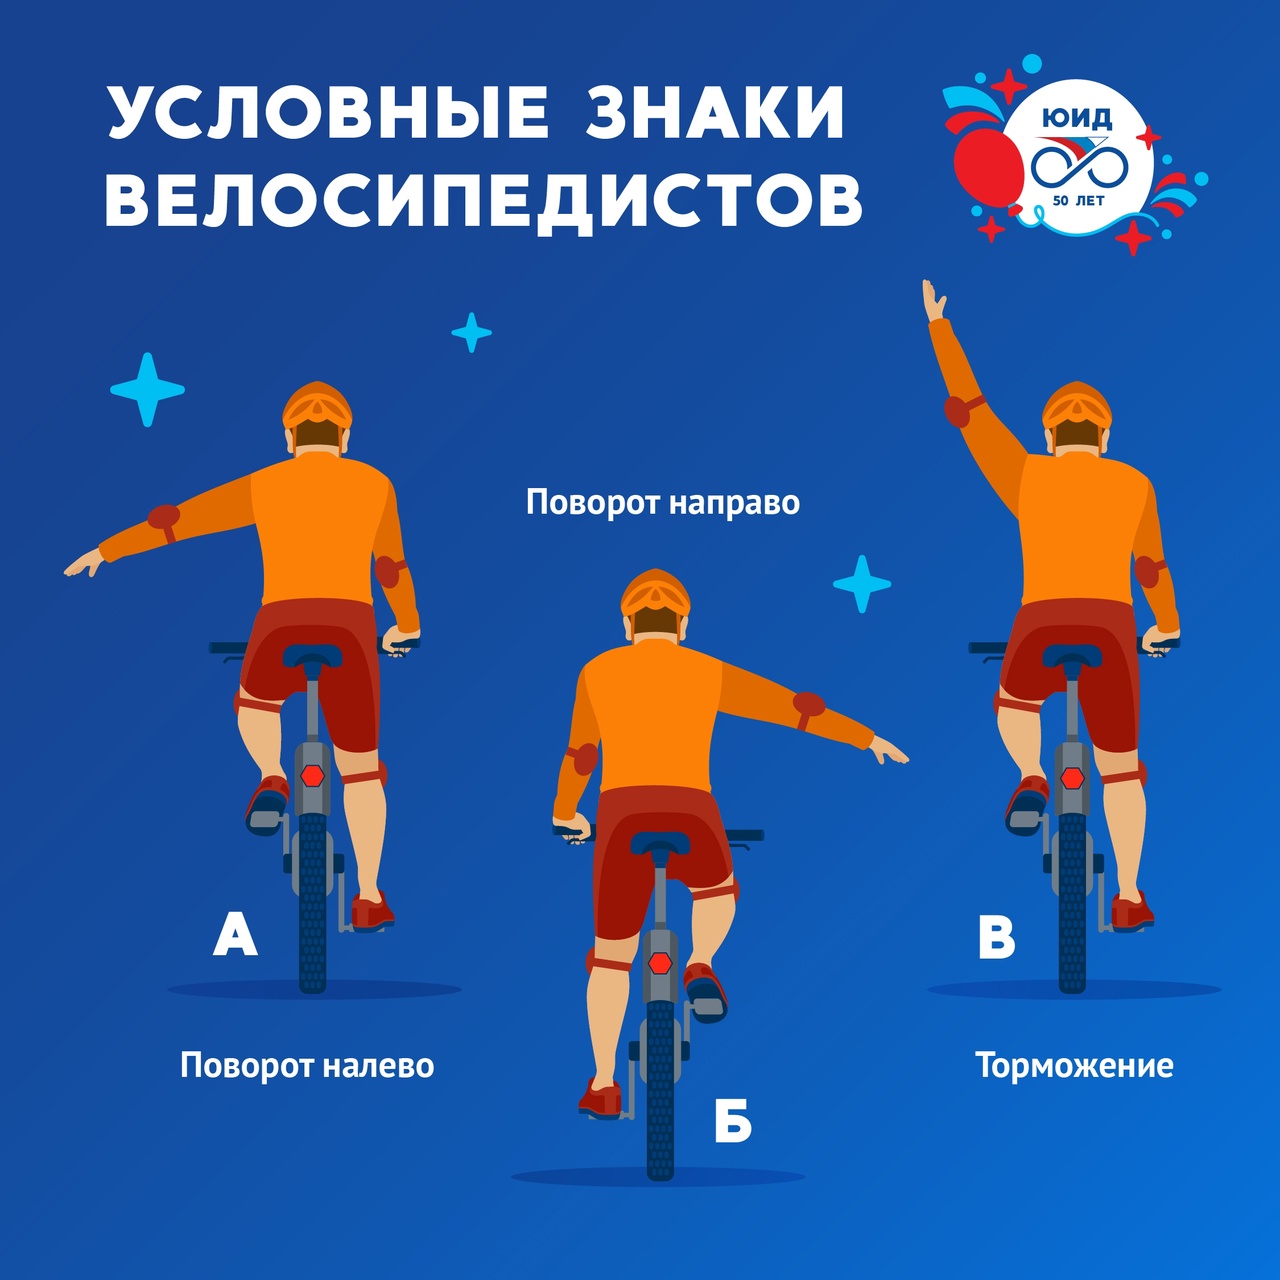 Важные правила для велосипедистов.